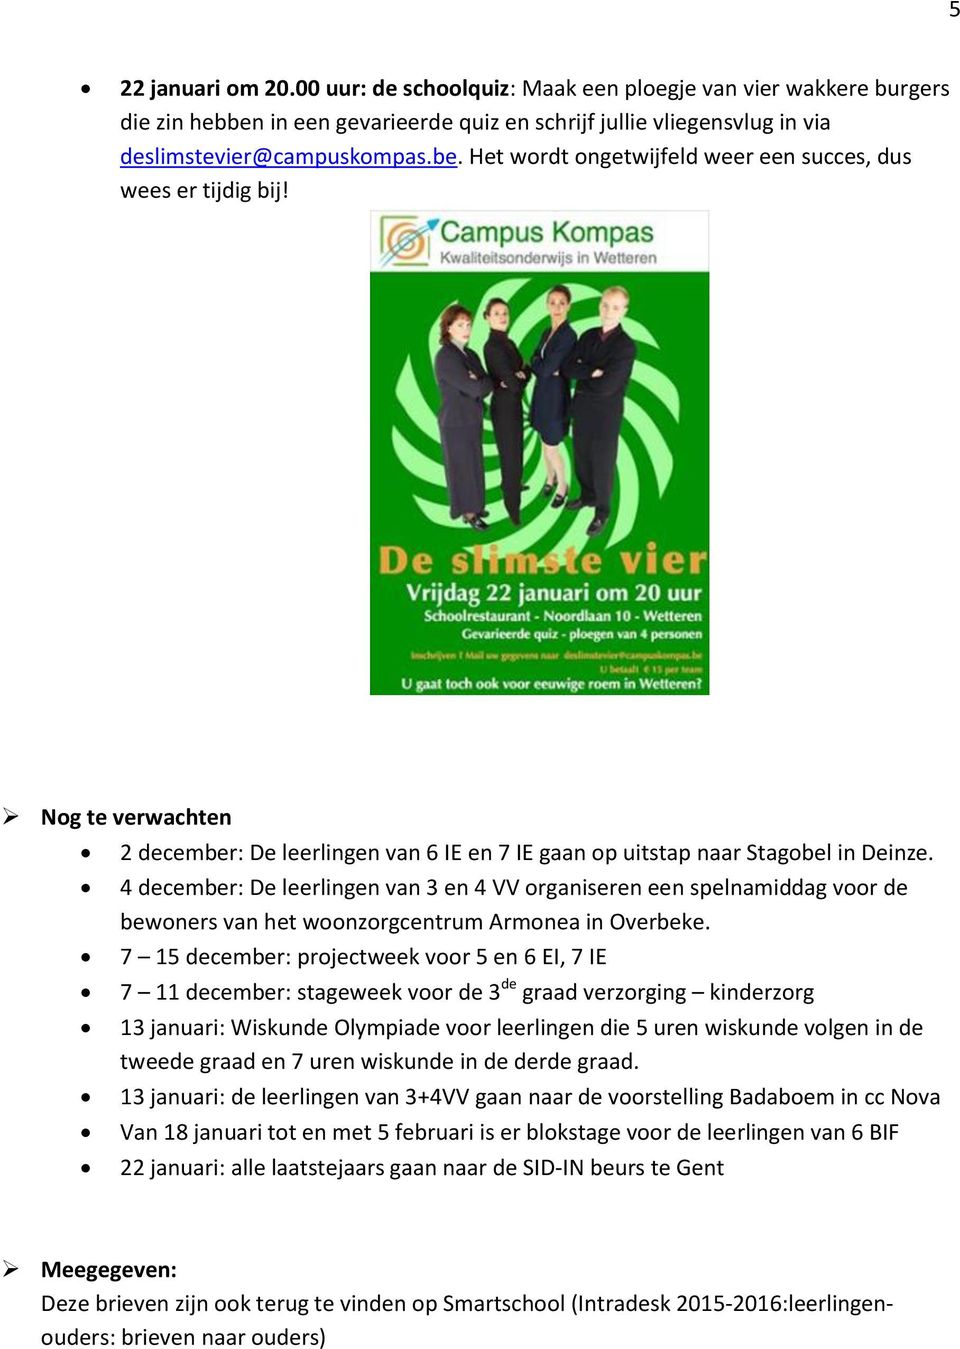 4 december: De leerlingen van 3 en 4 VV organiseren een spelnamiddag voor de bewoners van het woonzorgcentrum Armonea in Overbeke.